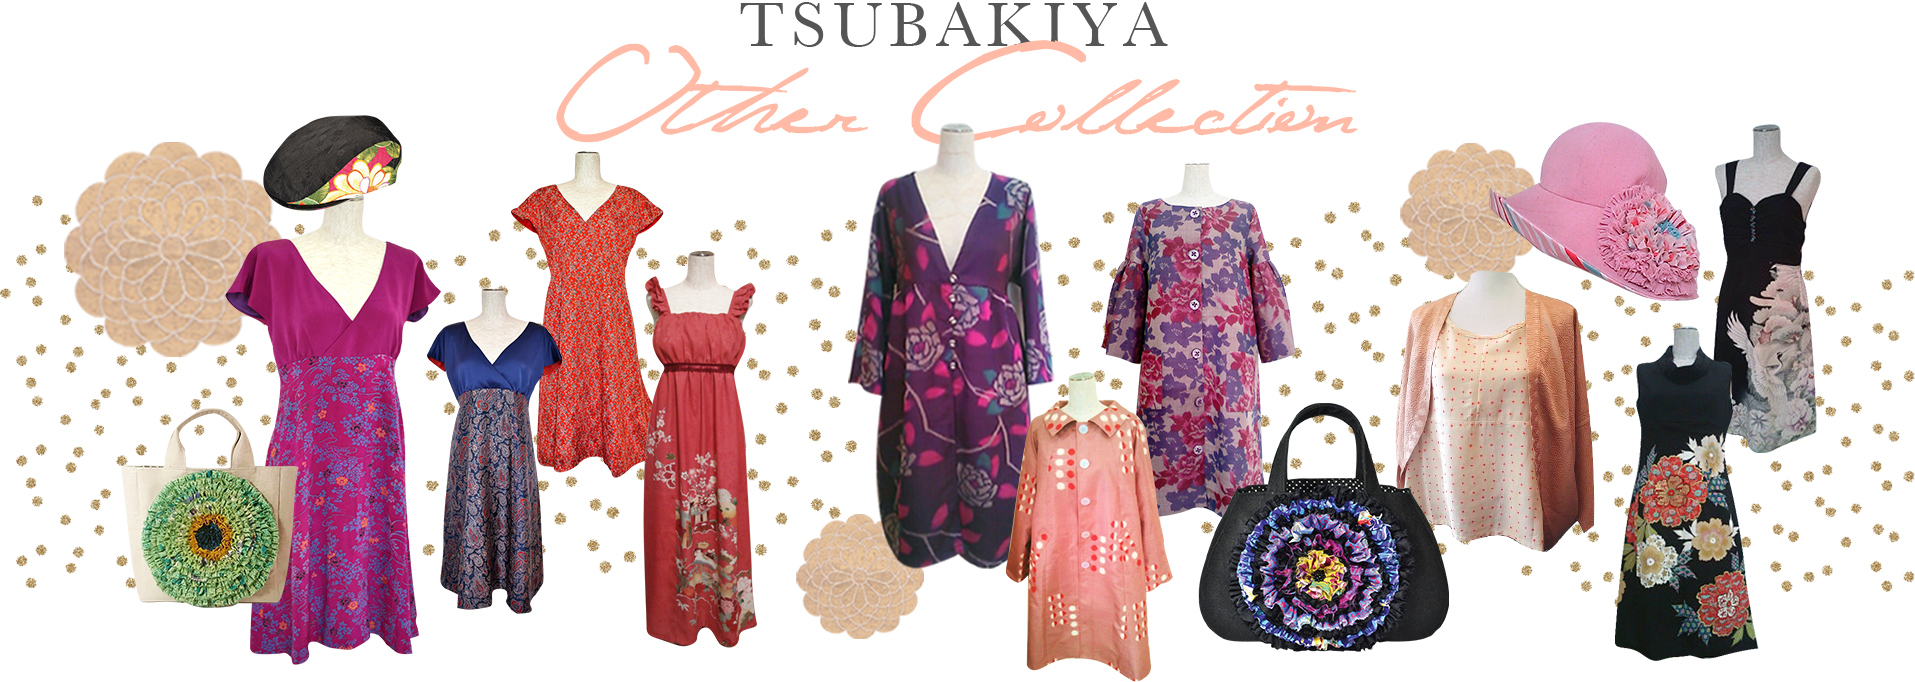 TSUBAKIYA Other Collection